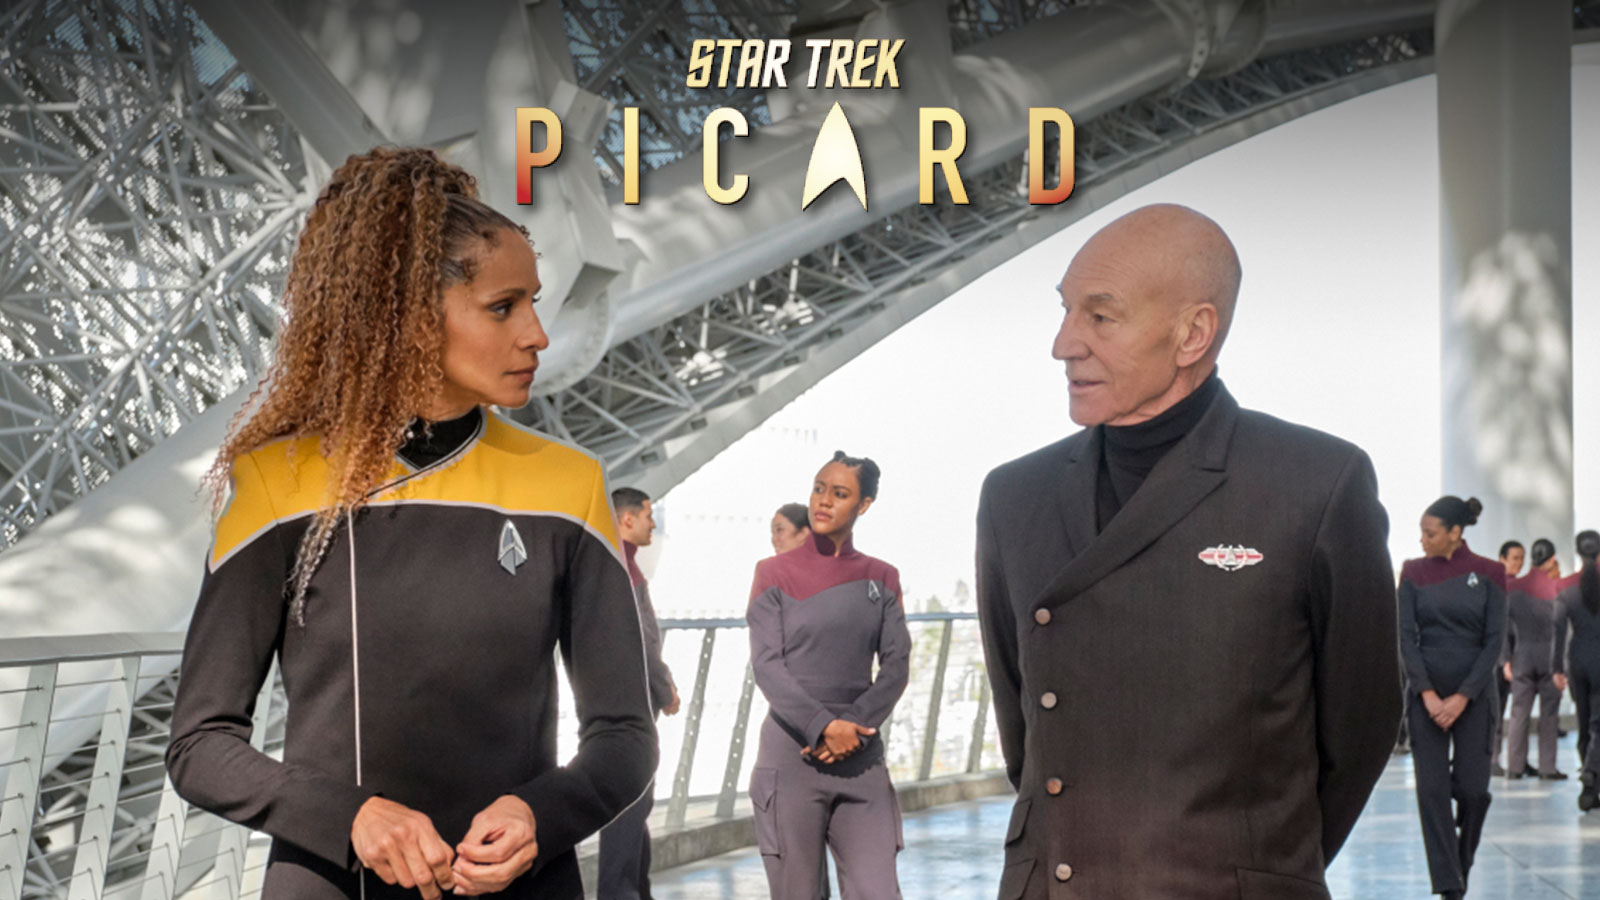 Star Trek: Picard Season 2 Premiere "The Star Gazer" Preview